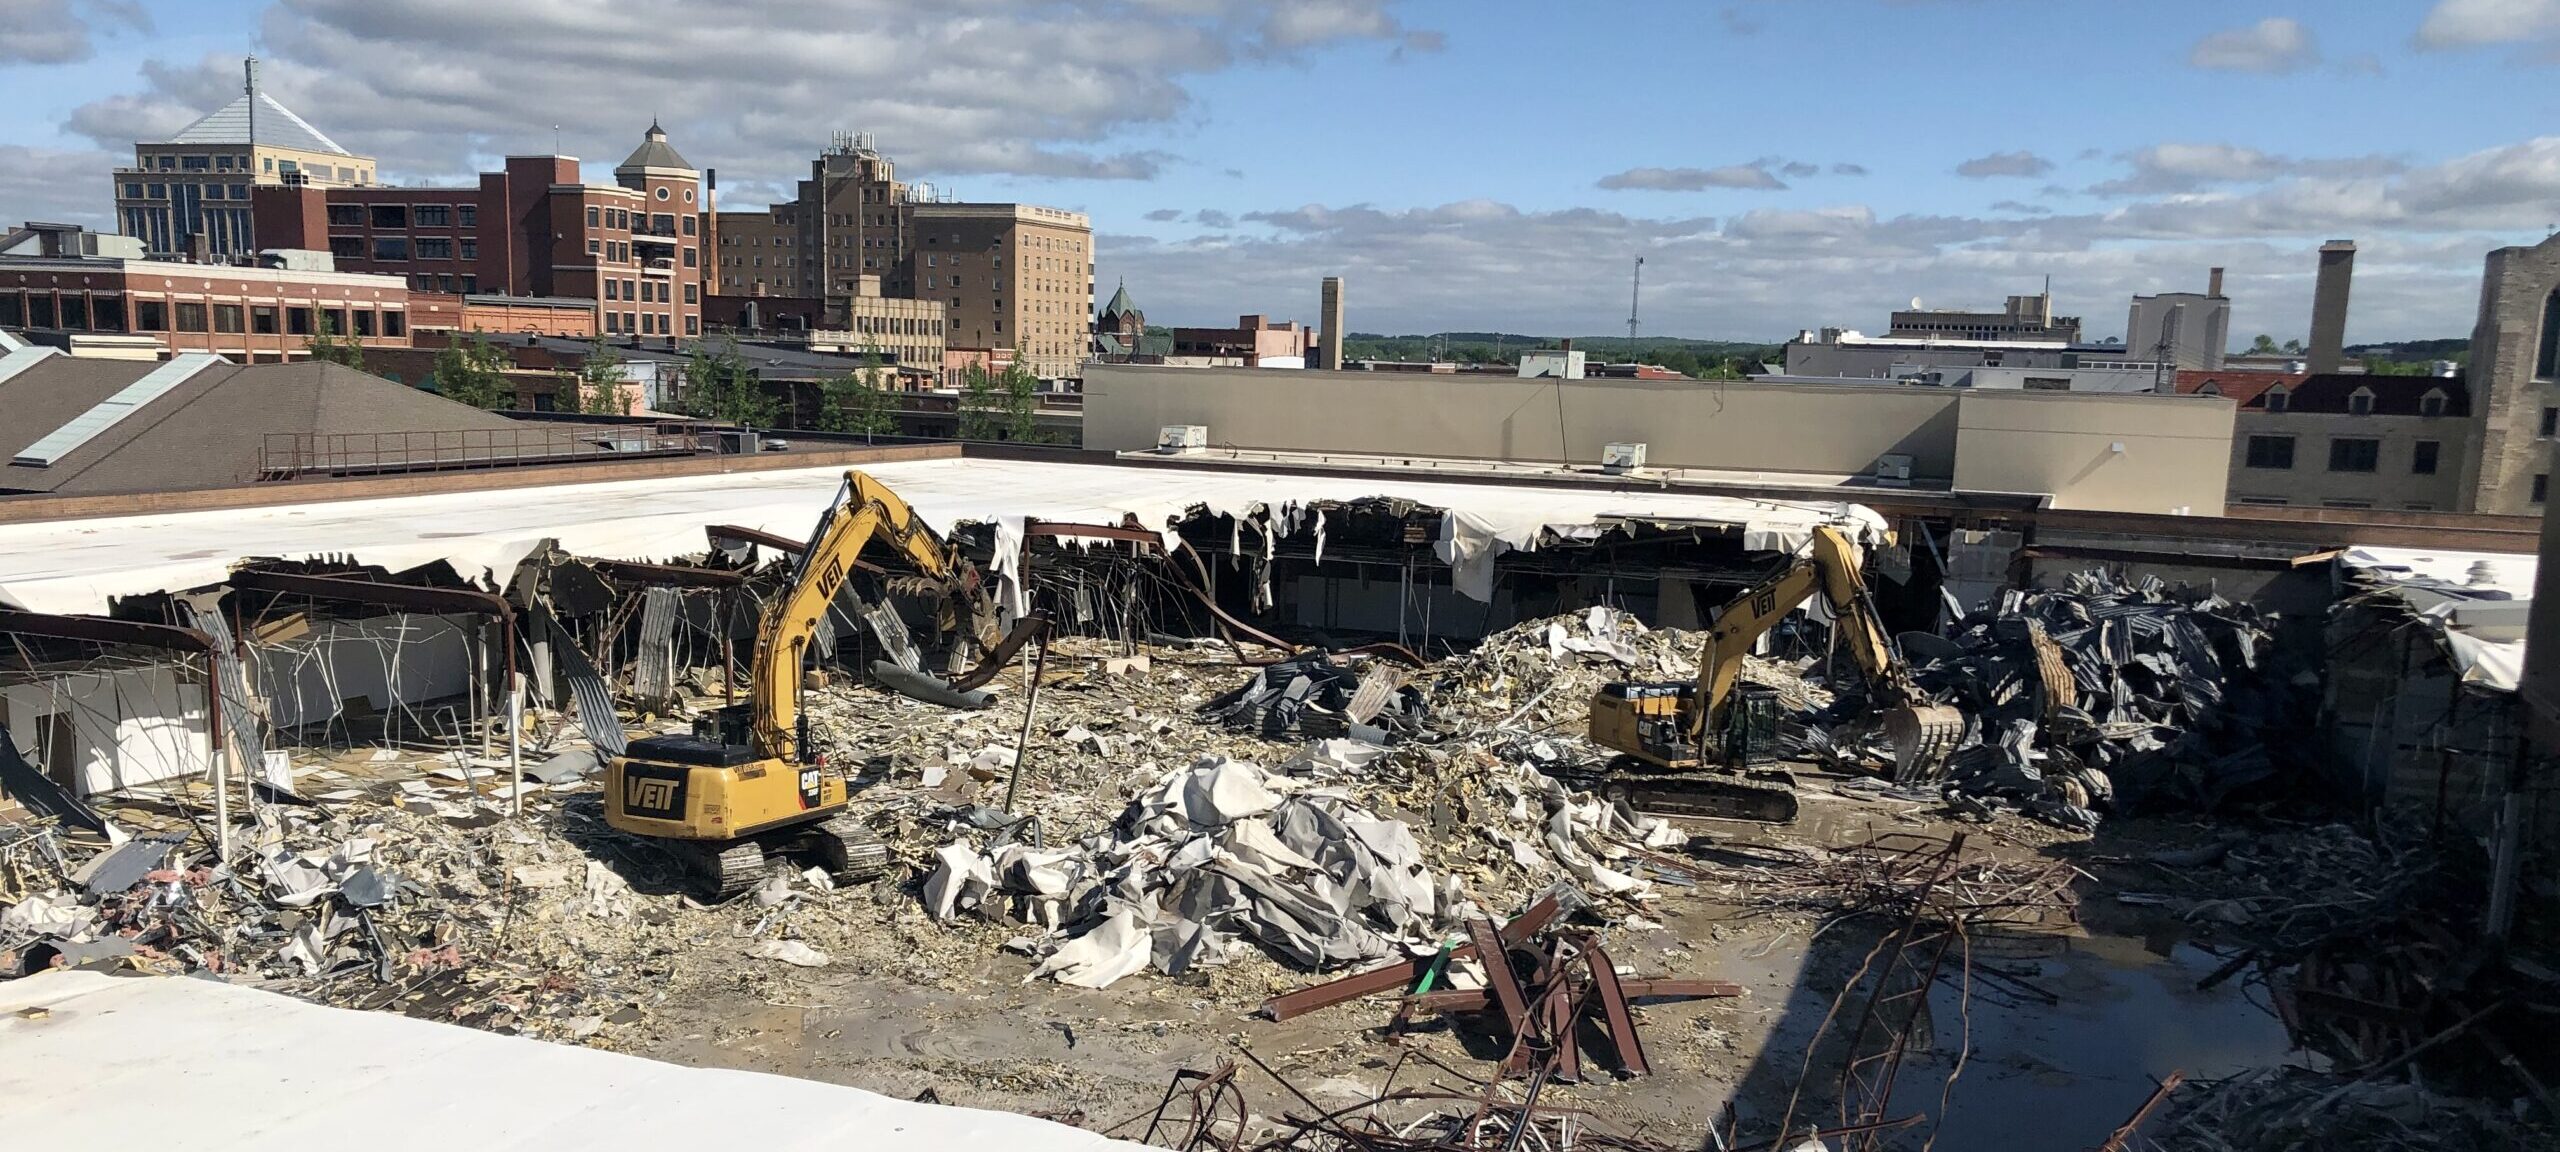 Sears building demolition